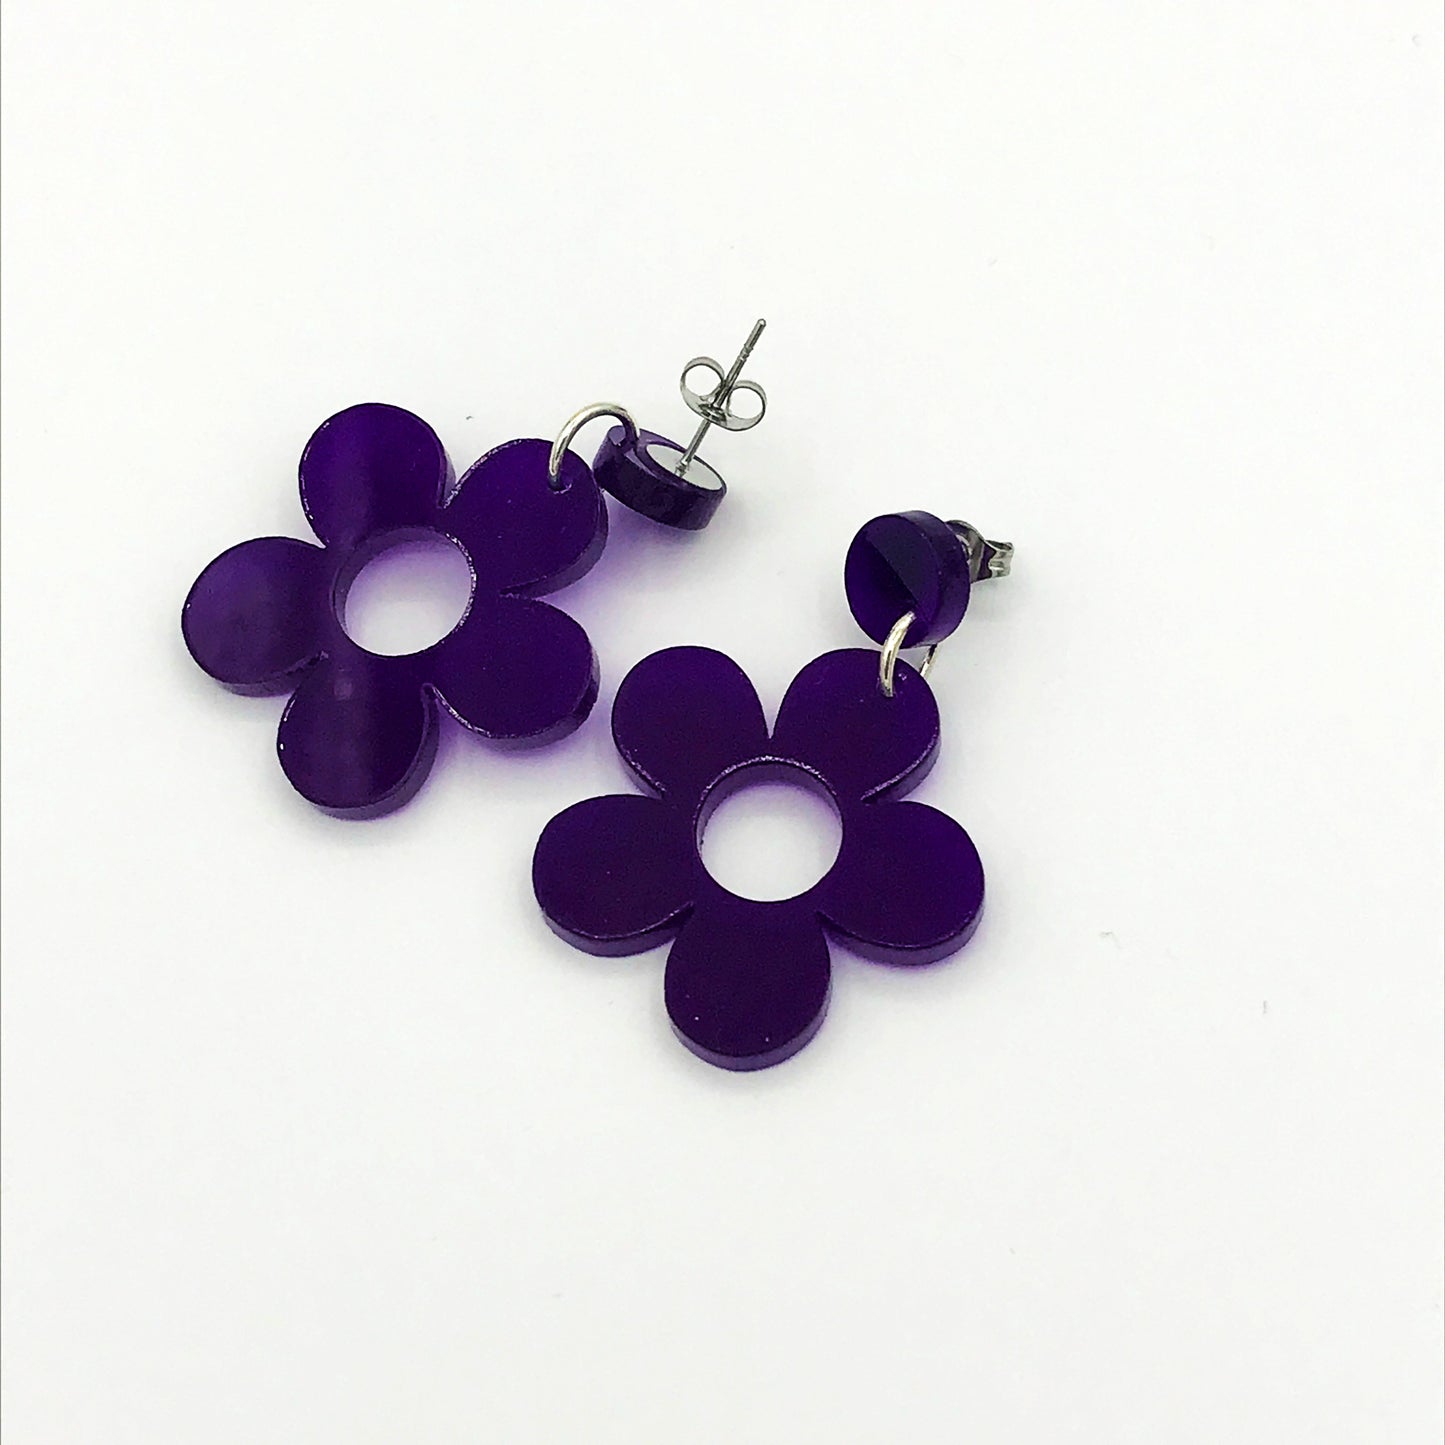 Retro Daisy Earrings - laser cut acrylic - purple